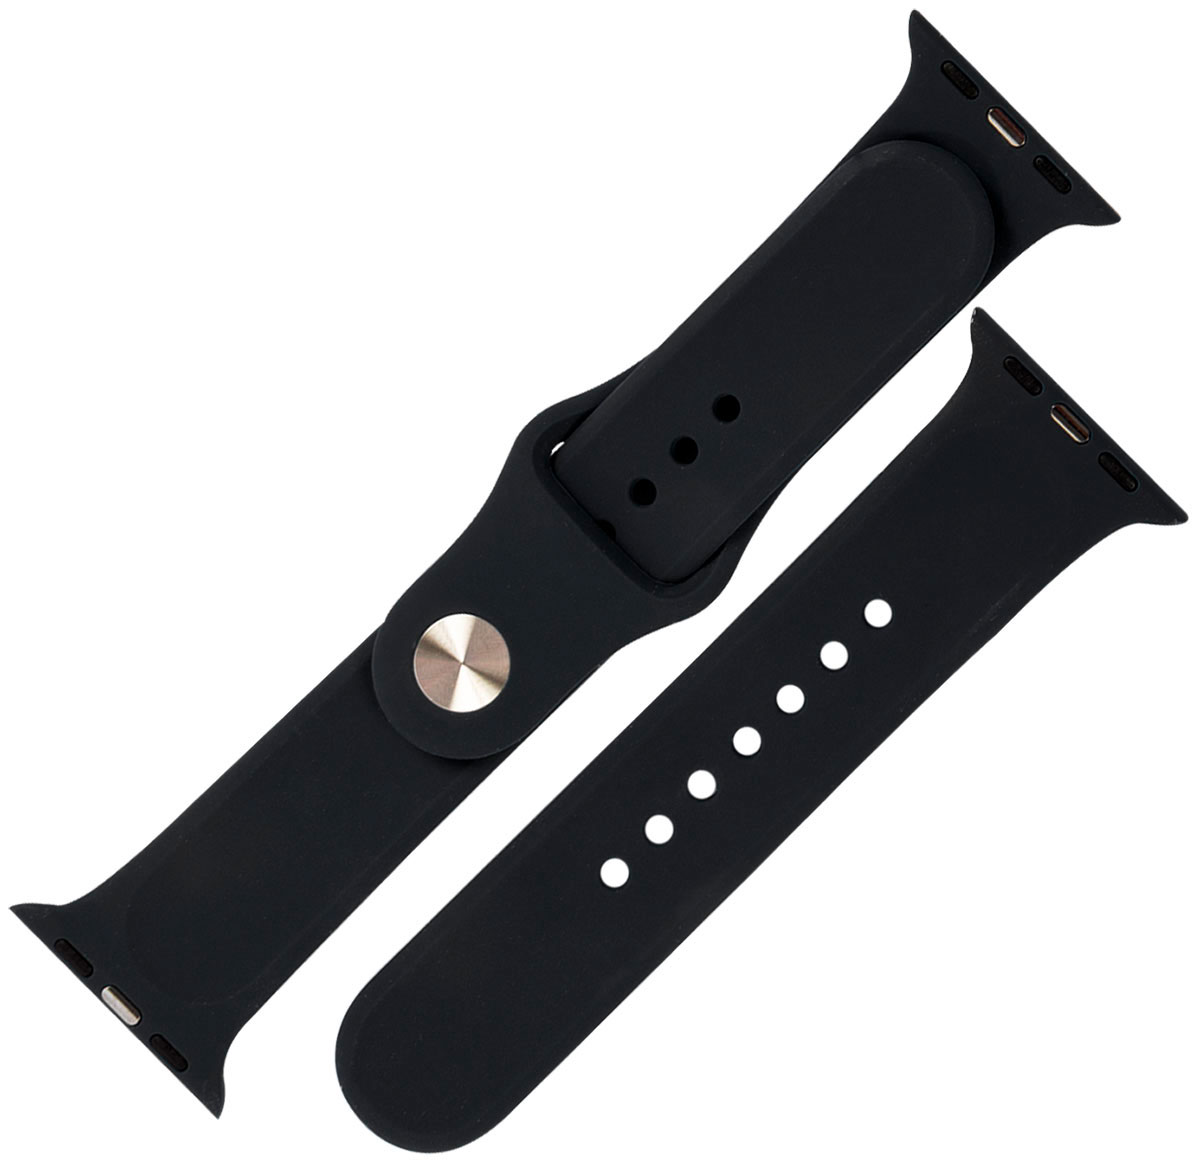 Ремешок силиконовый mObility для Apple watch - 38-40 мм (S3/S4/S5 SE/S6), черный ремешок силиконовый mobility для apple watch 38 40 мм s3 s4 s5 se s6 черный